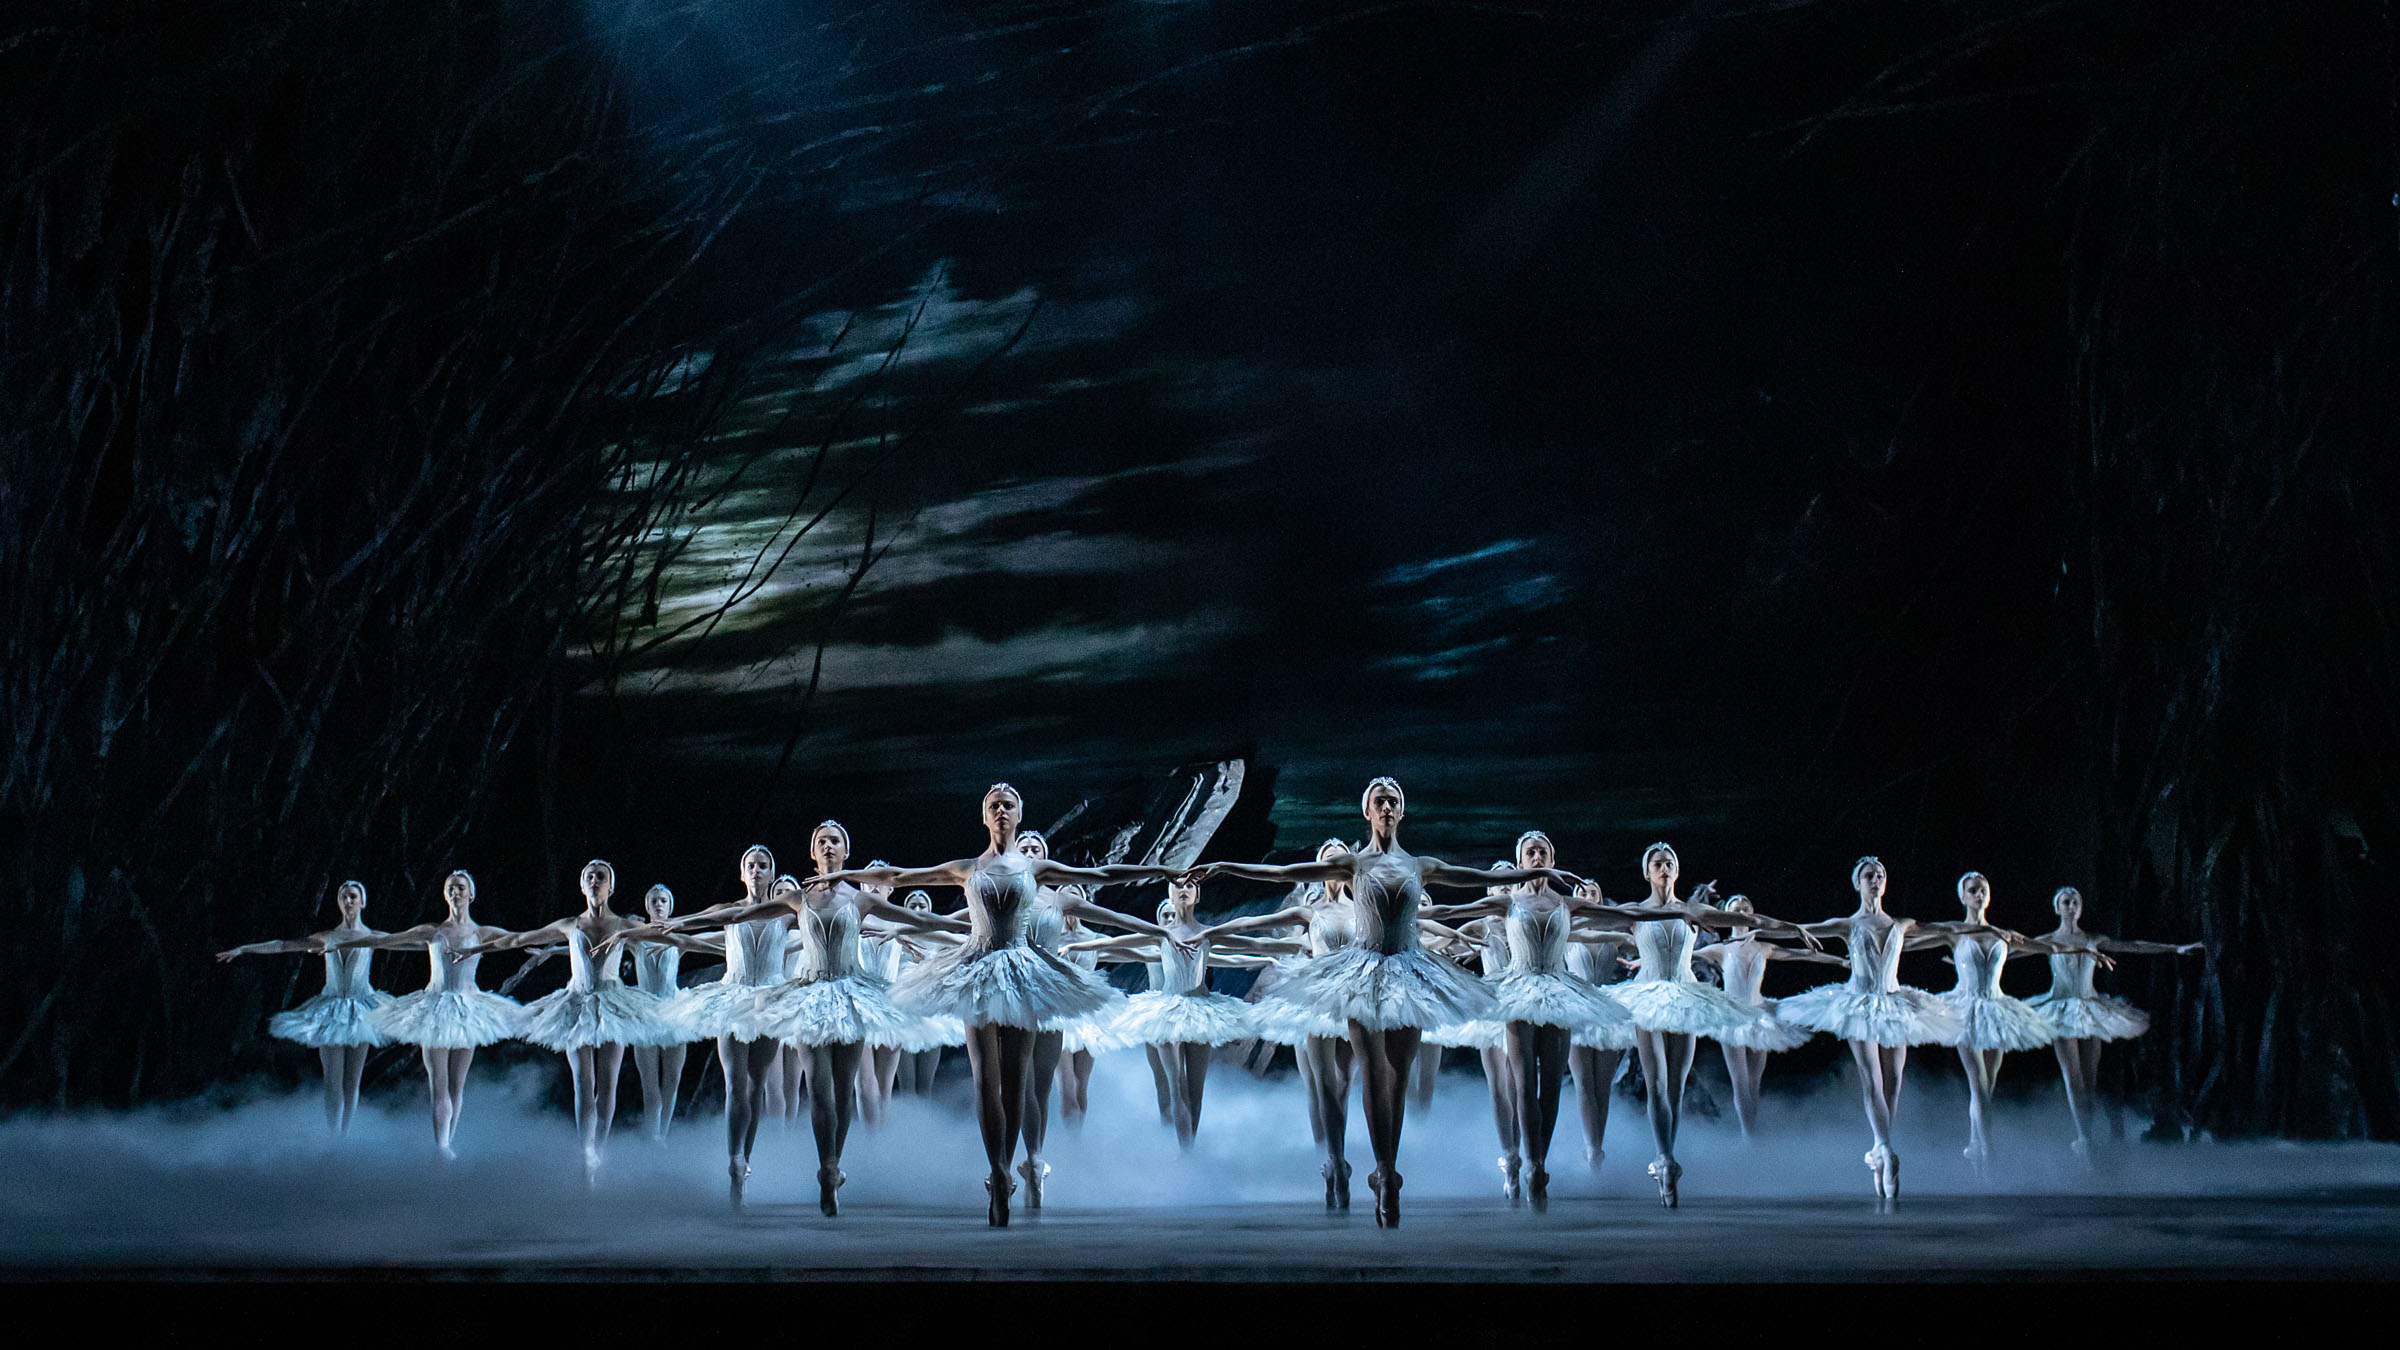 Swan Lake by the Royal Ballet at the Royal Opera House